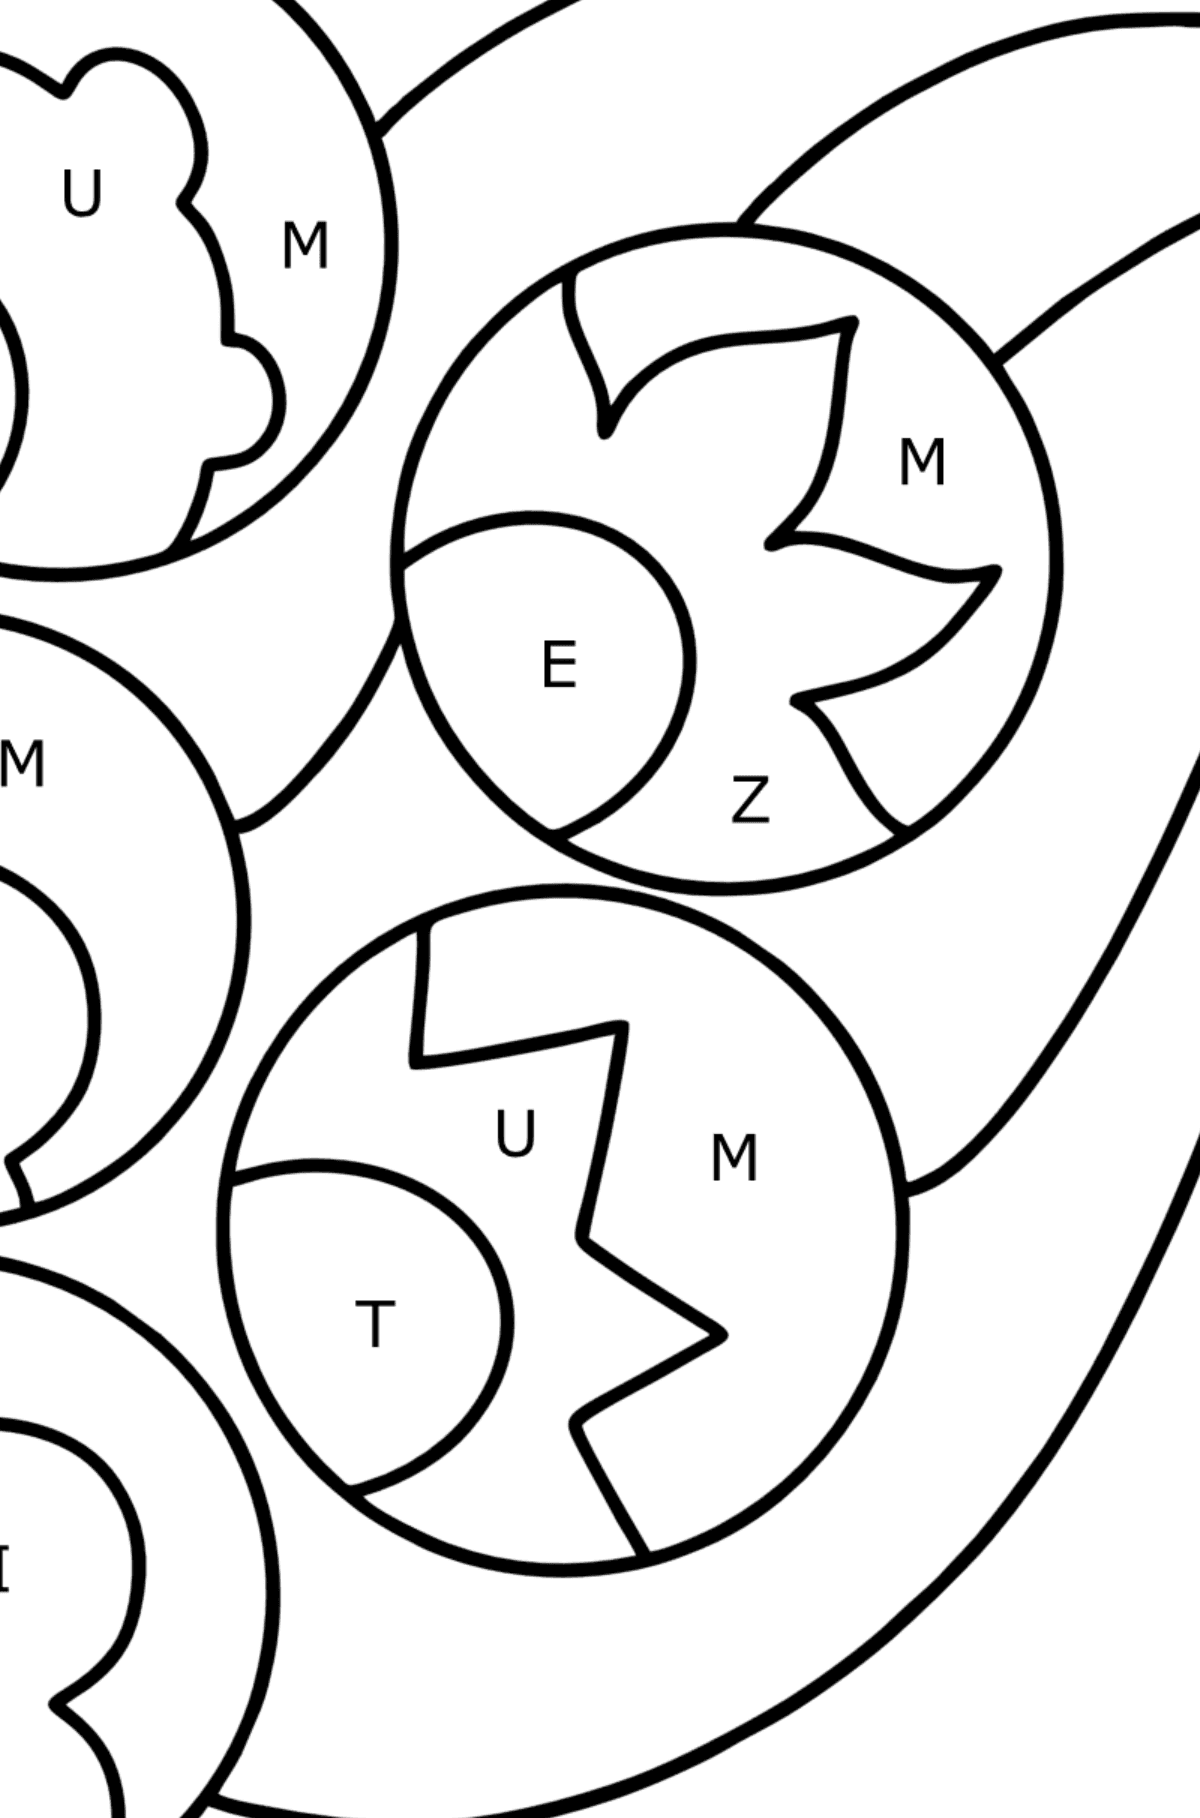 Ausmalbild Zentangle inspiriert - Ausmalen nach Buchstaben für Kinder